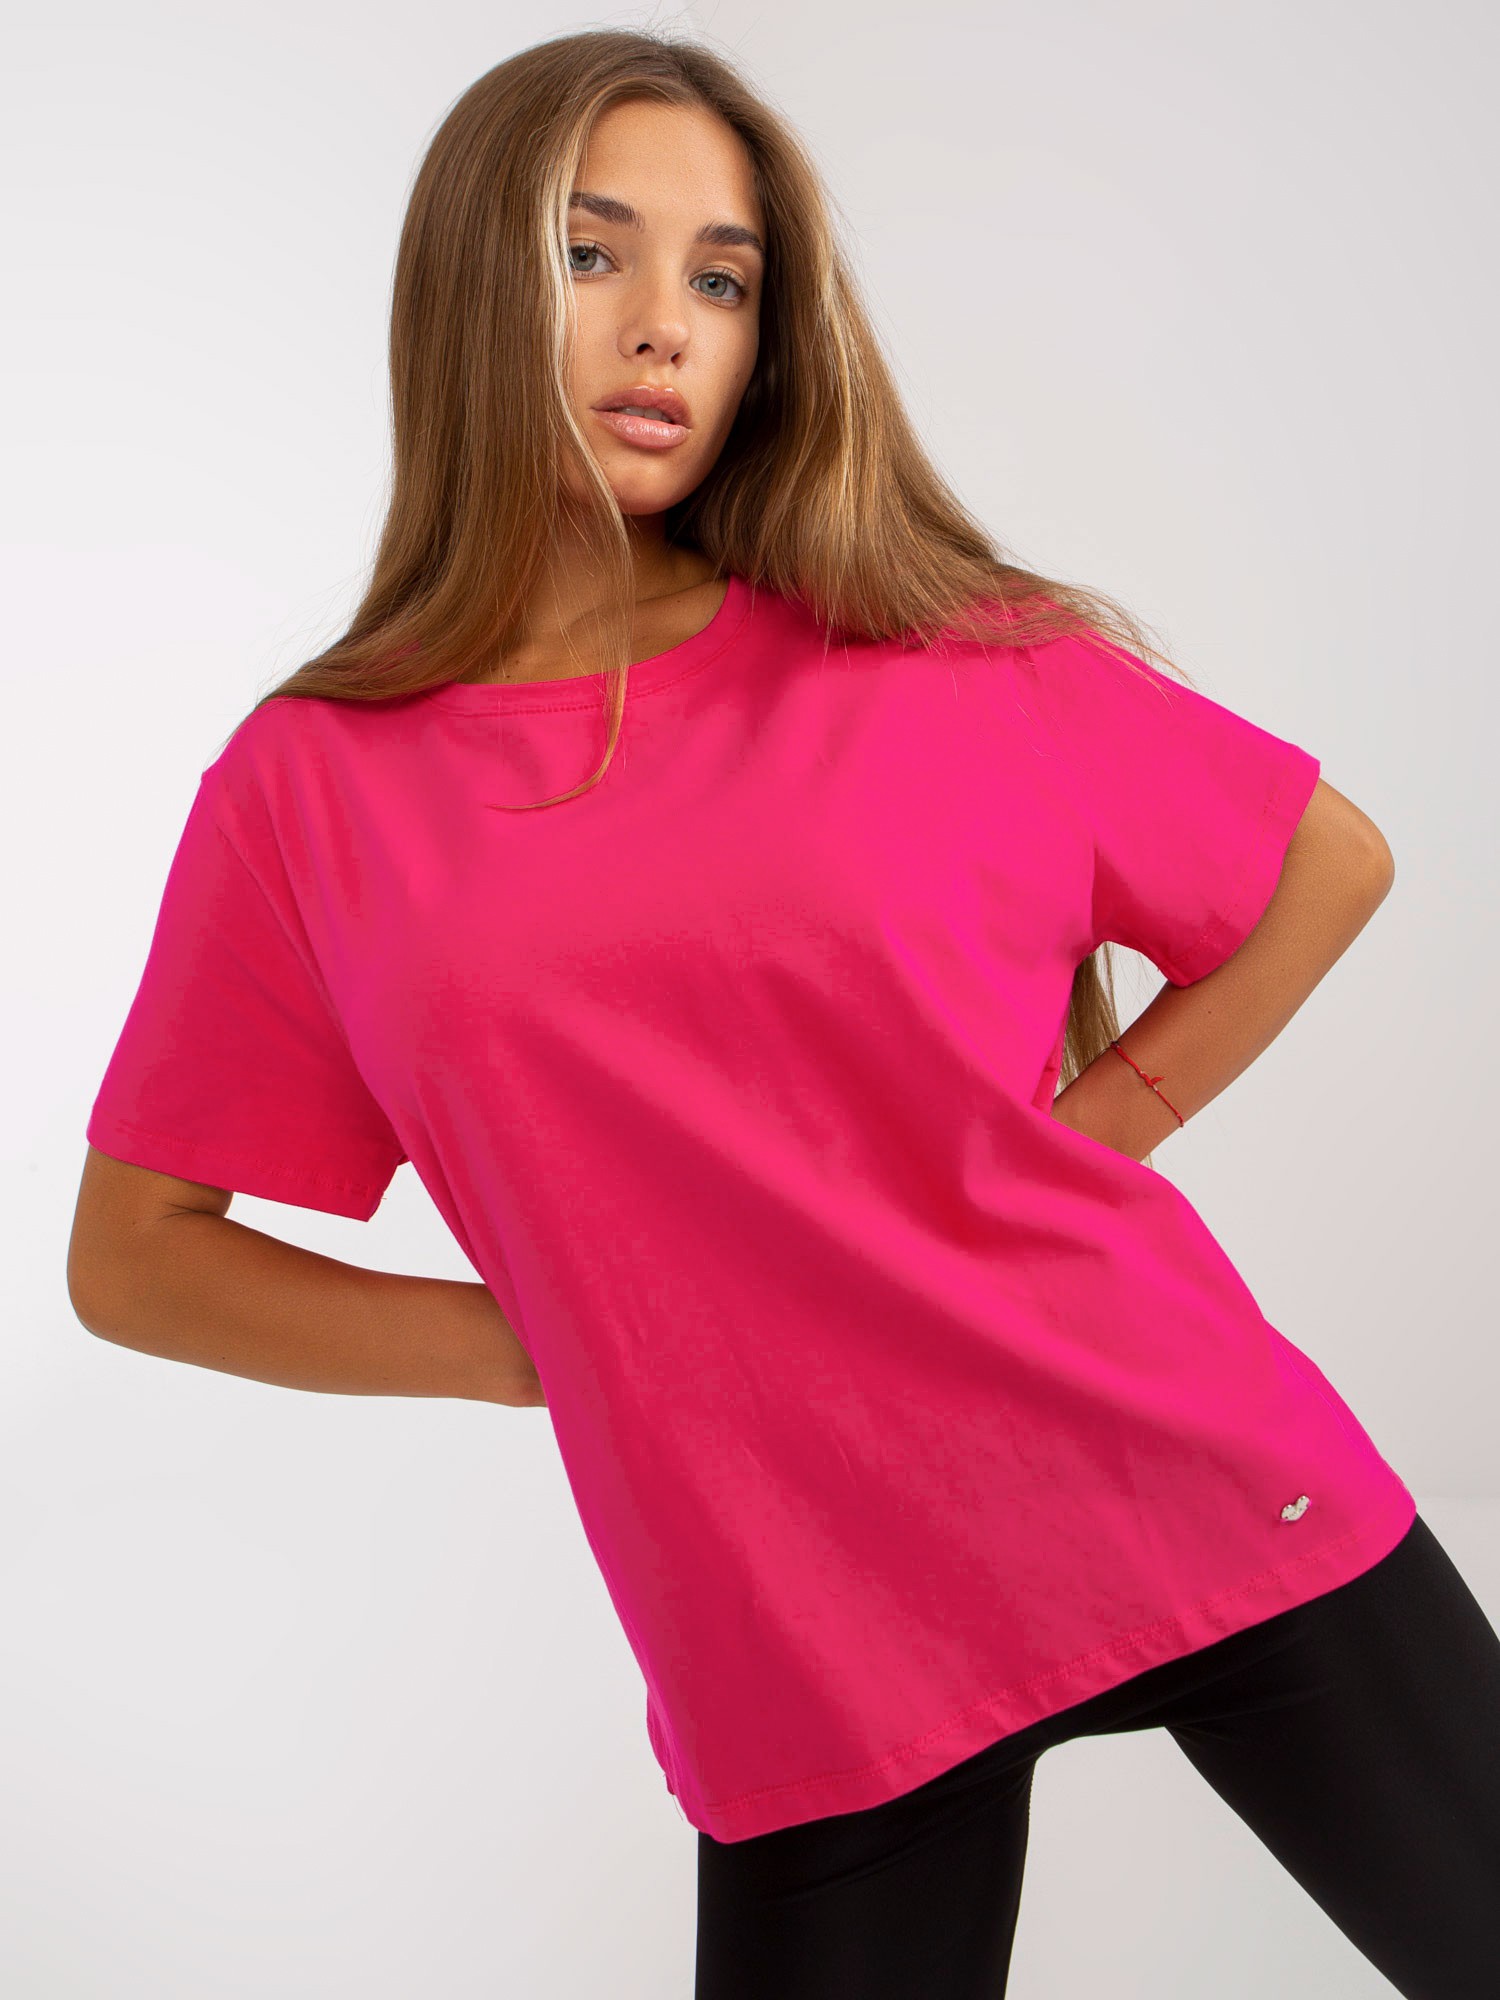 Tmavě růžové dámské tričko s krátkými rukávy RV-TS-8047.57P-fuchsia Velikost: S/M